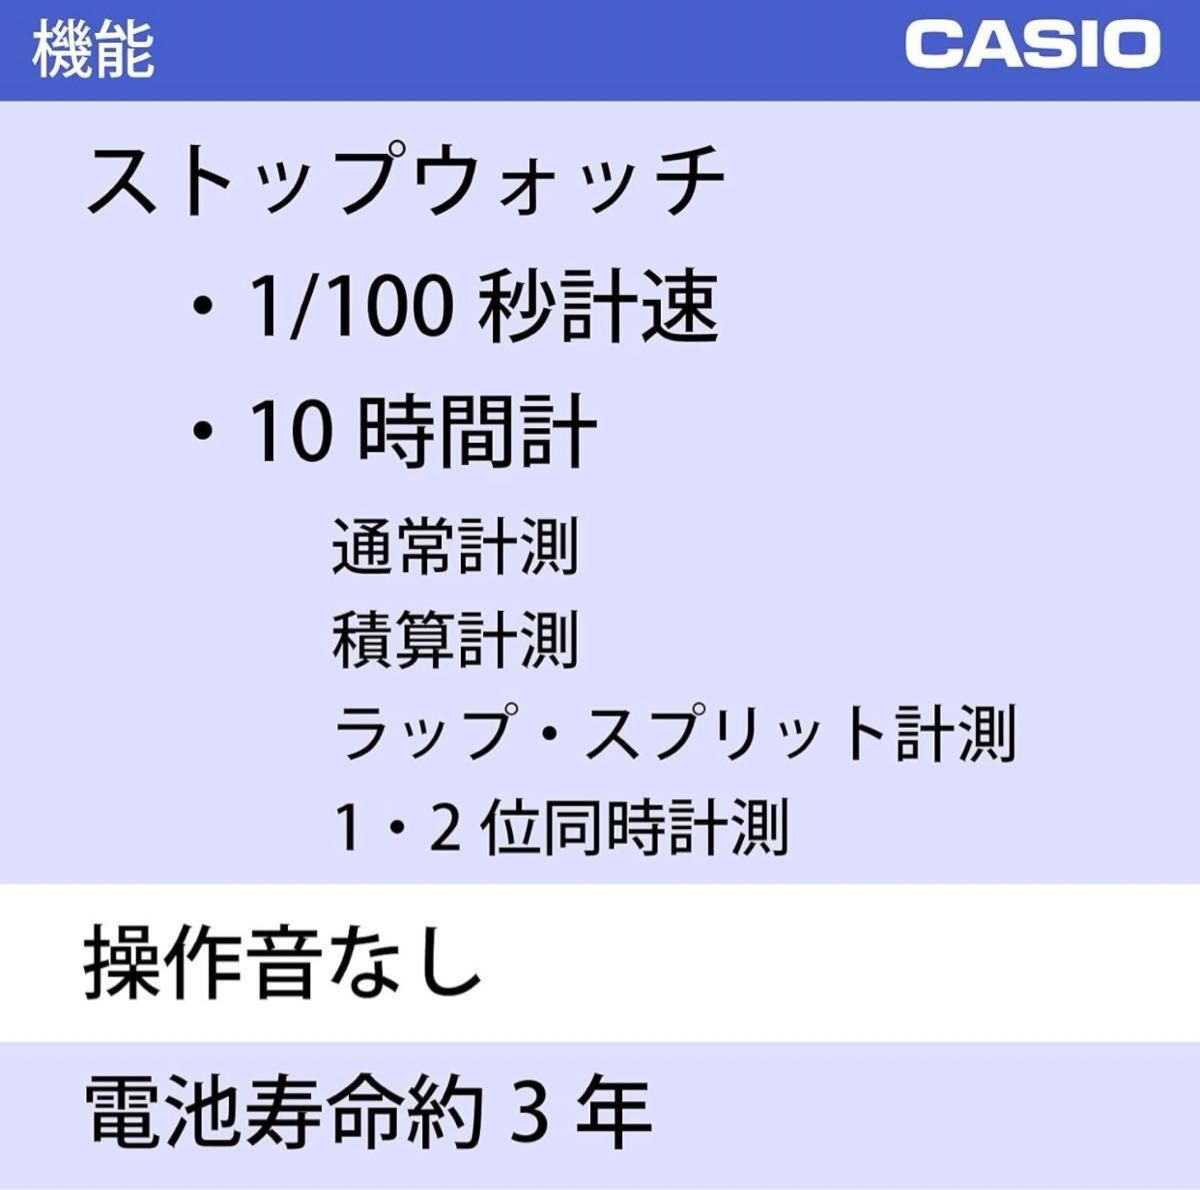 CASIO(カシオ) ストップウォッチ ラップタイム スプリット 計測 消音 ブラックHS-3C-8AJH